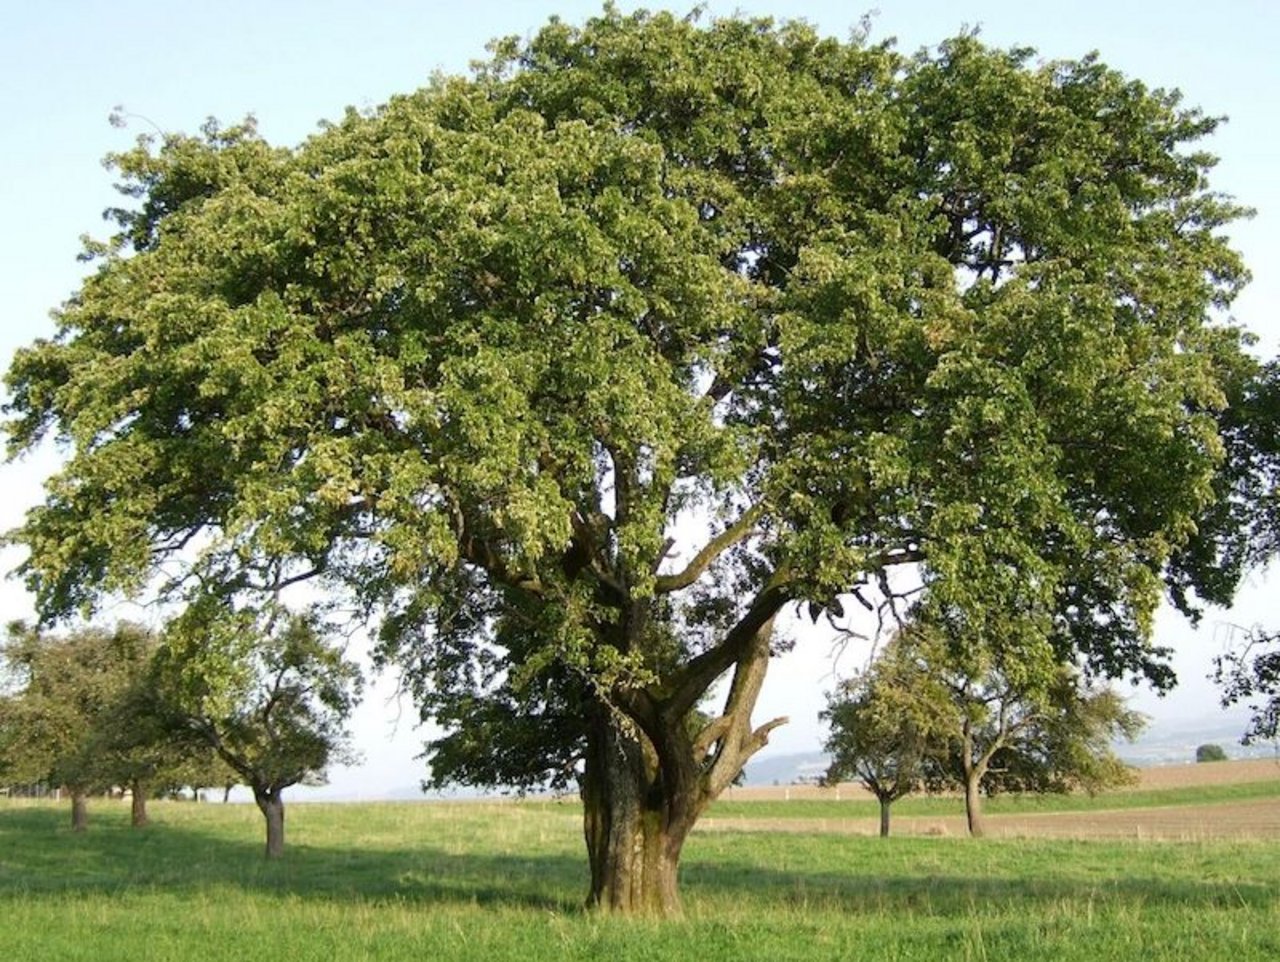 Sept-en-gueule: In der Schweiz wächst sie an einem riesigen Baum, mit einem Stammumfang von 4,7 Metern, in Orges VD. (Bilder Klaus Gersbach)